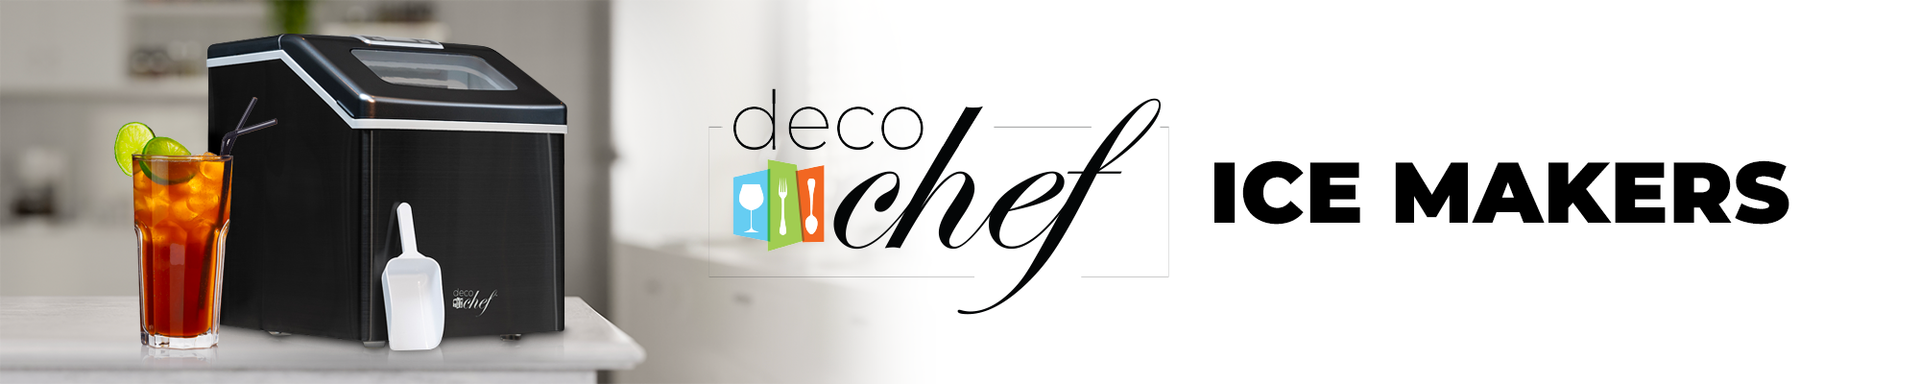 Deco Chef Self-Dispensing Nugget Ice Maker Countertop, 46LB per day  Automatic